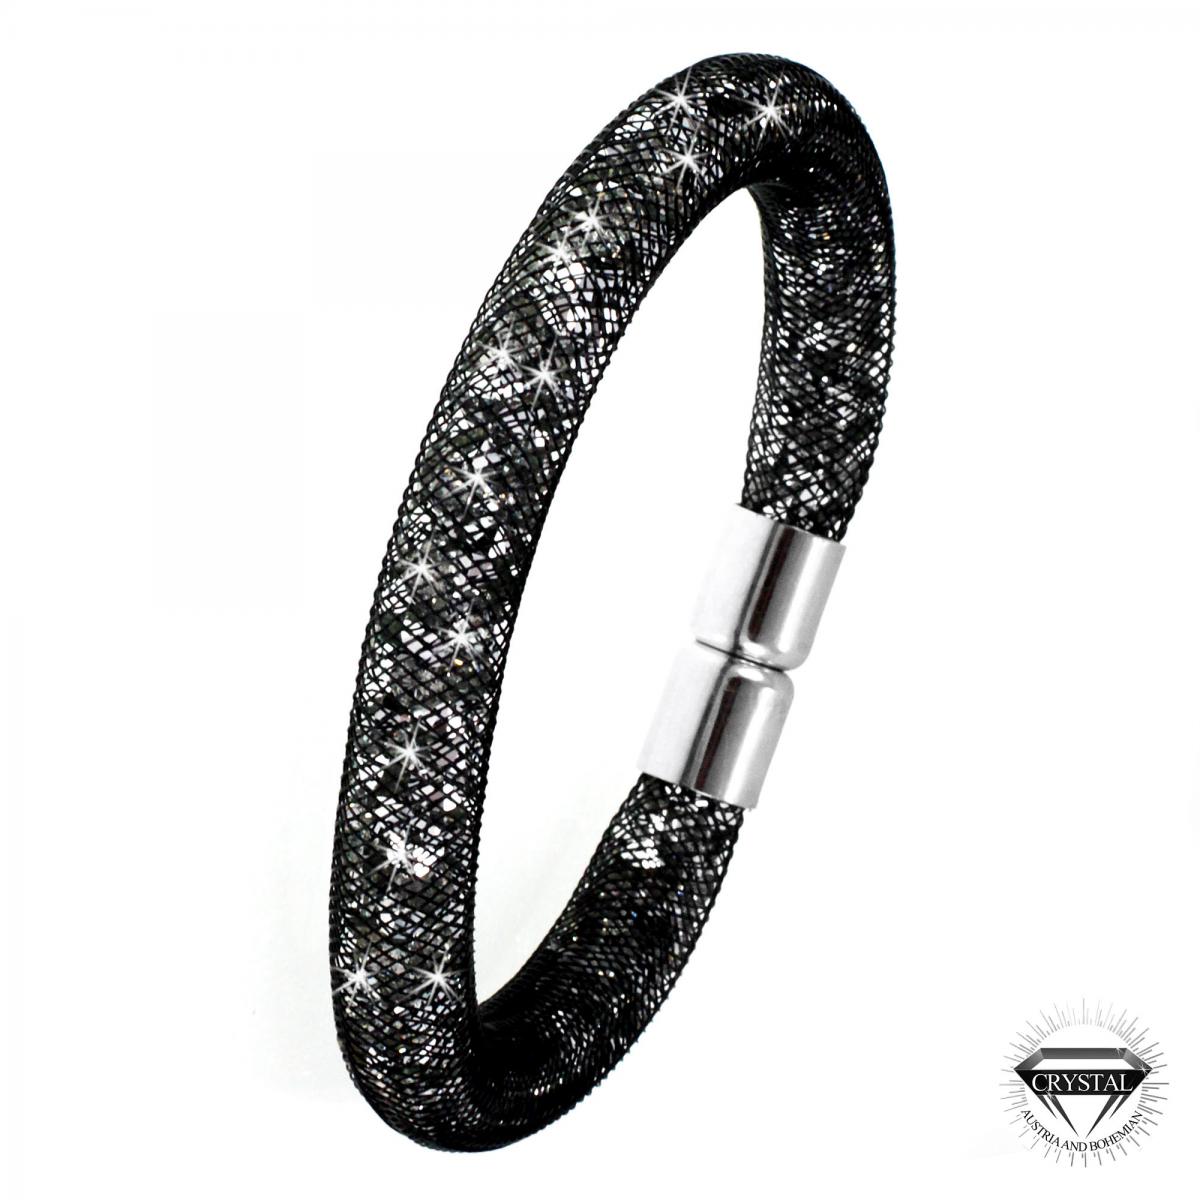 Promo : Bracelet noir tube strass par SoCharm